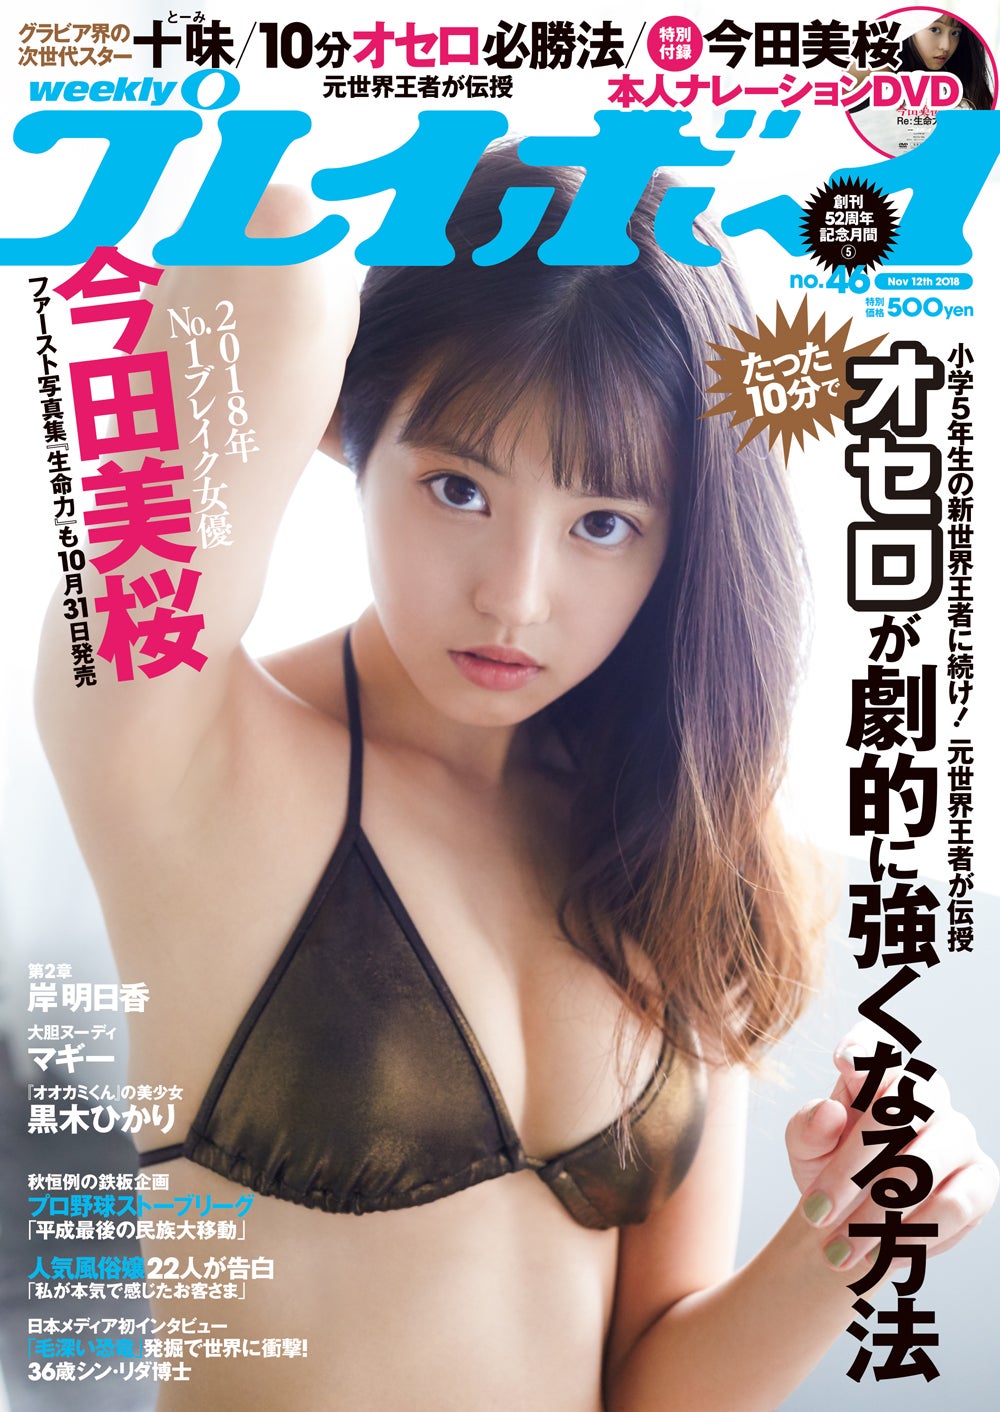 今田美桜DVD付録付き 週刊プレイボーイ 2点セット - 雑誌